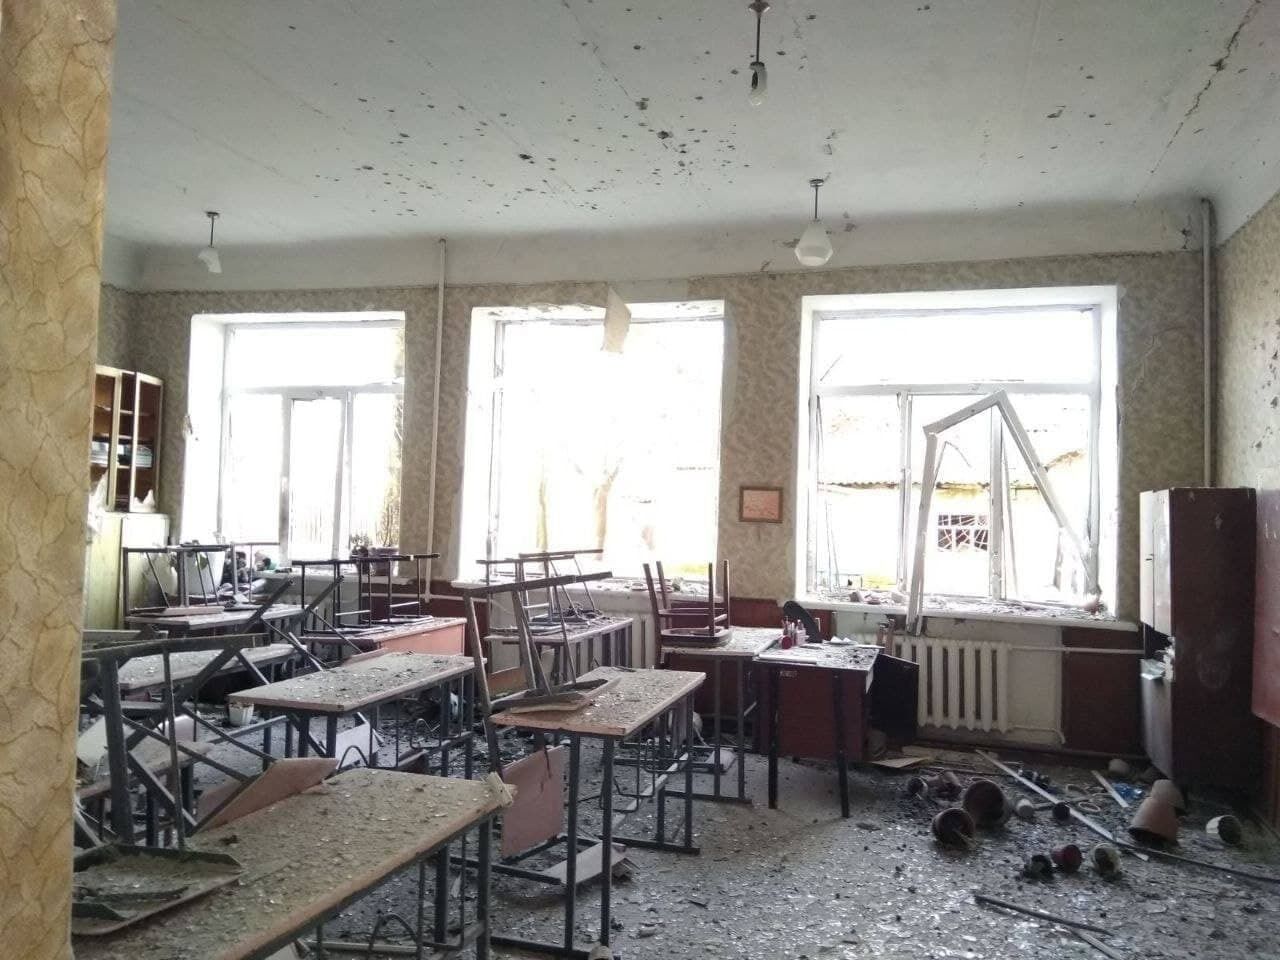 На фото видно разрушенный школьный кабинет